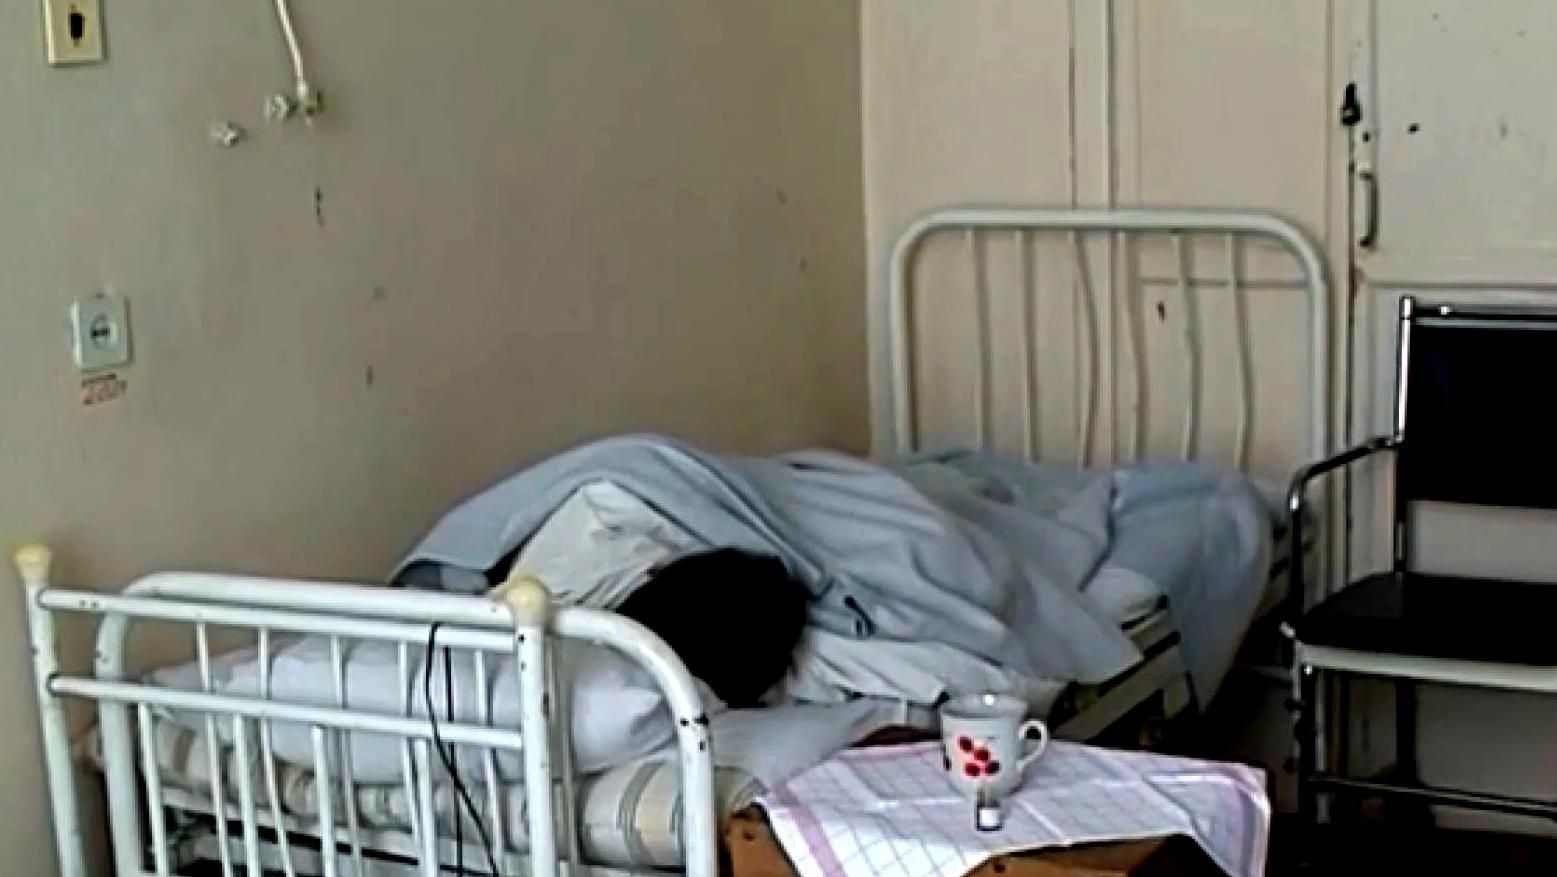 Скільки українців щодня страждає від застарілої медичної системи, розповіли екперти